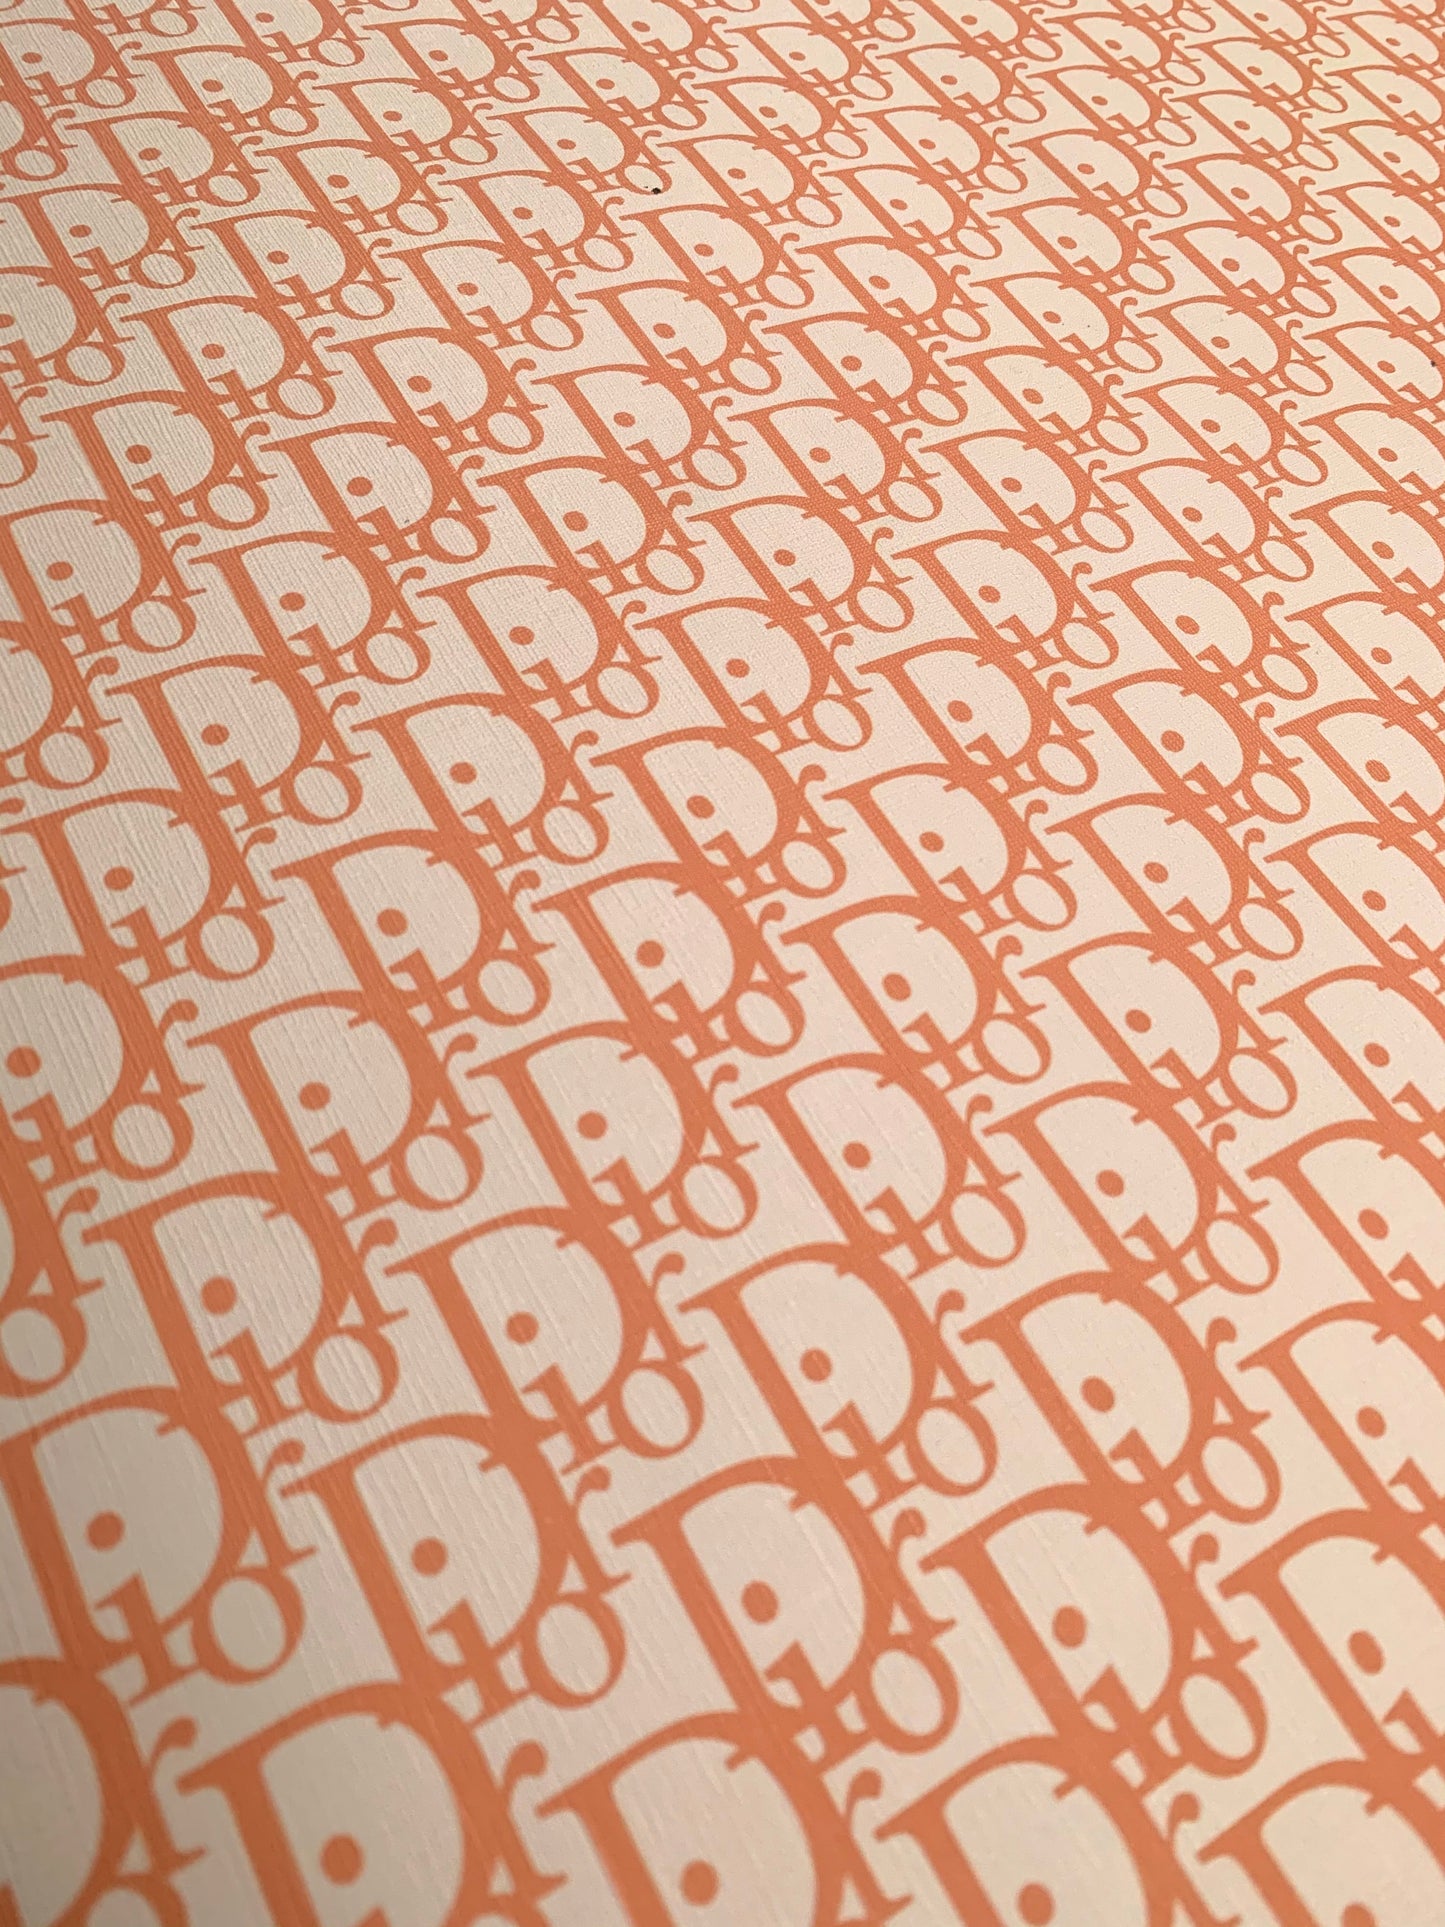 Designer Vinyl Custom Orange Dior Leather Fabric for Sneaker Upholstery